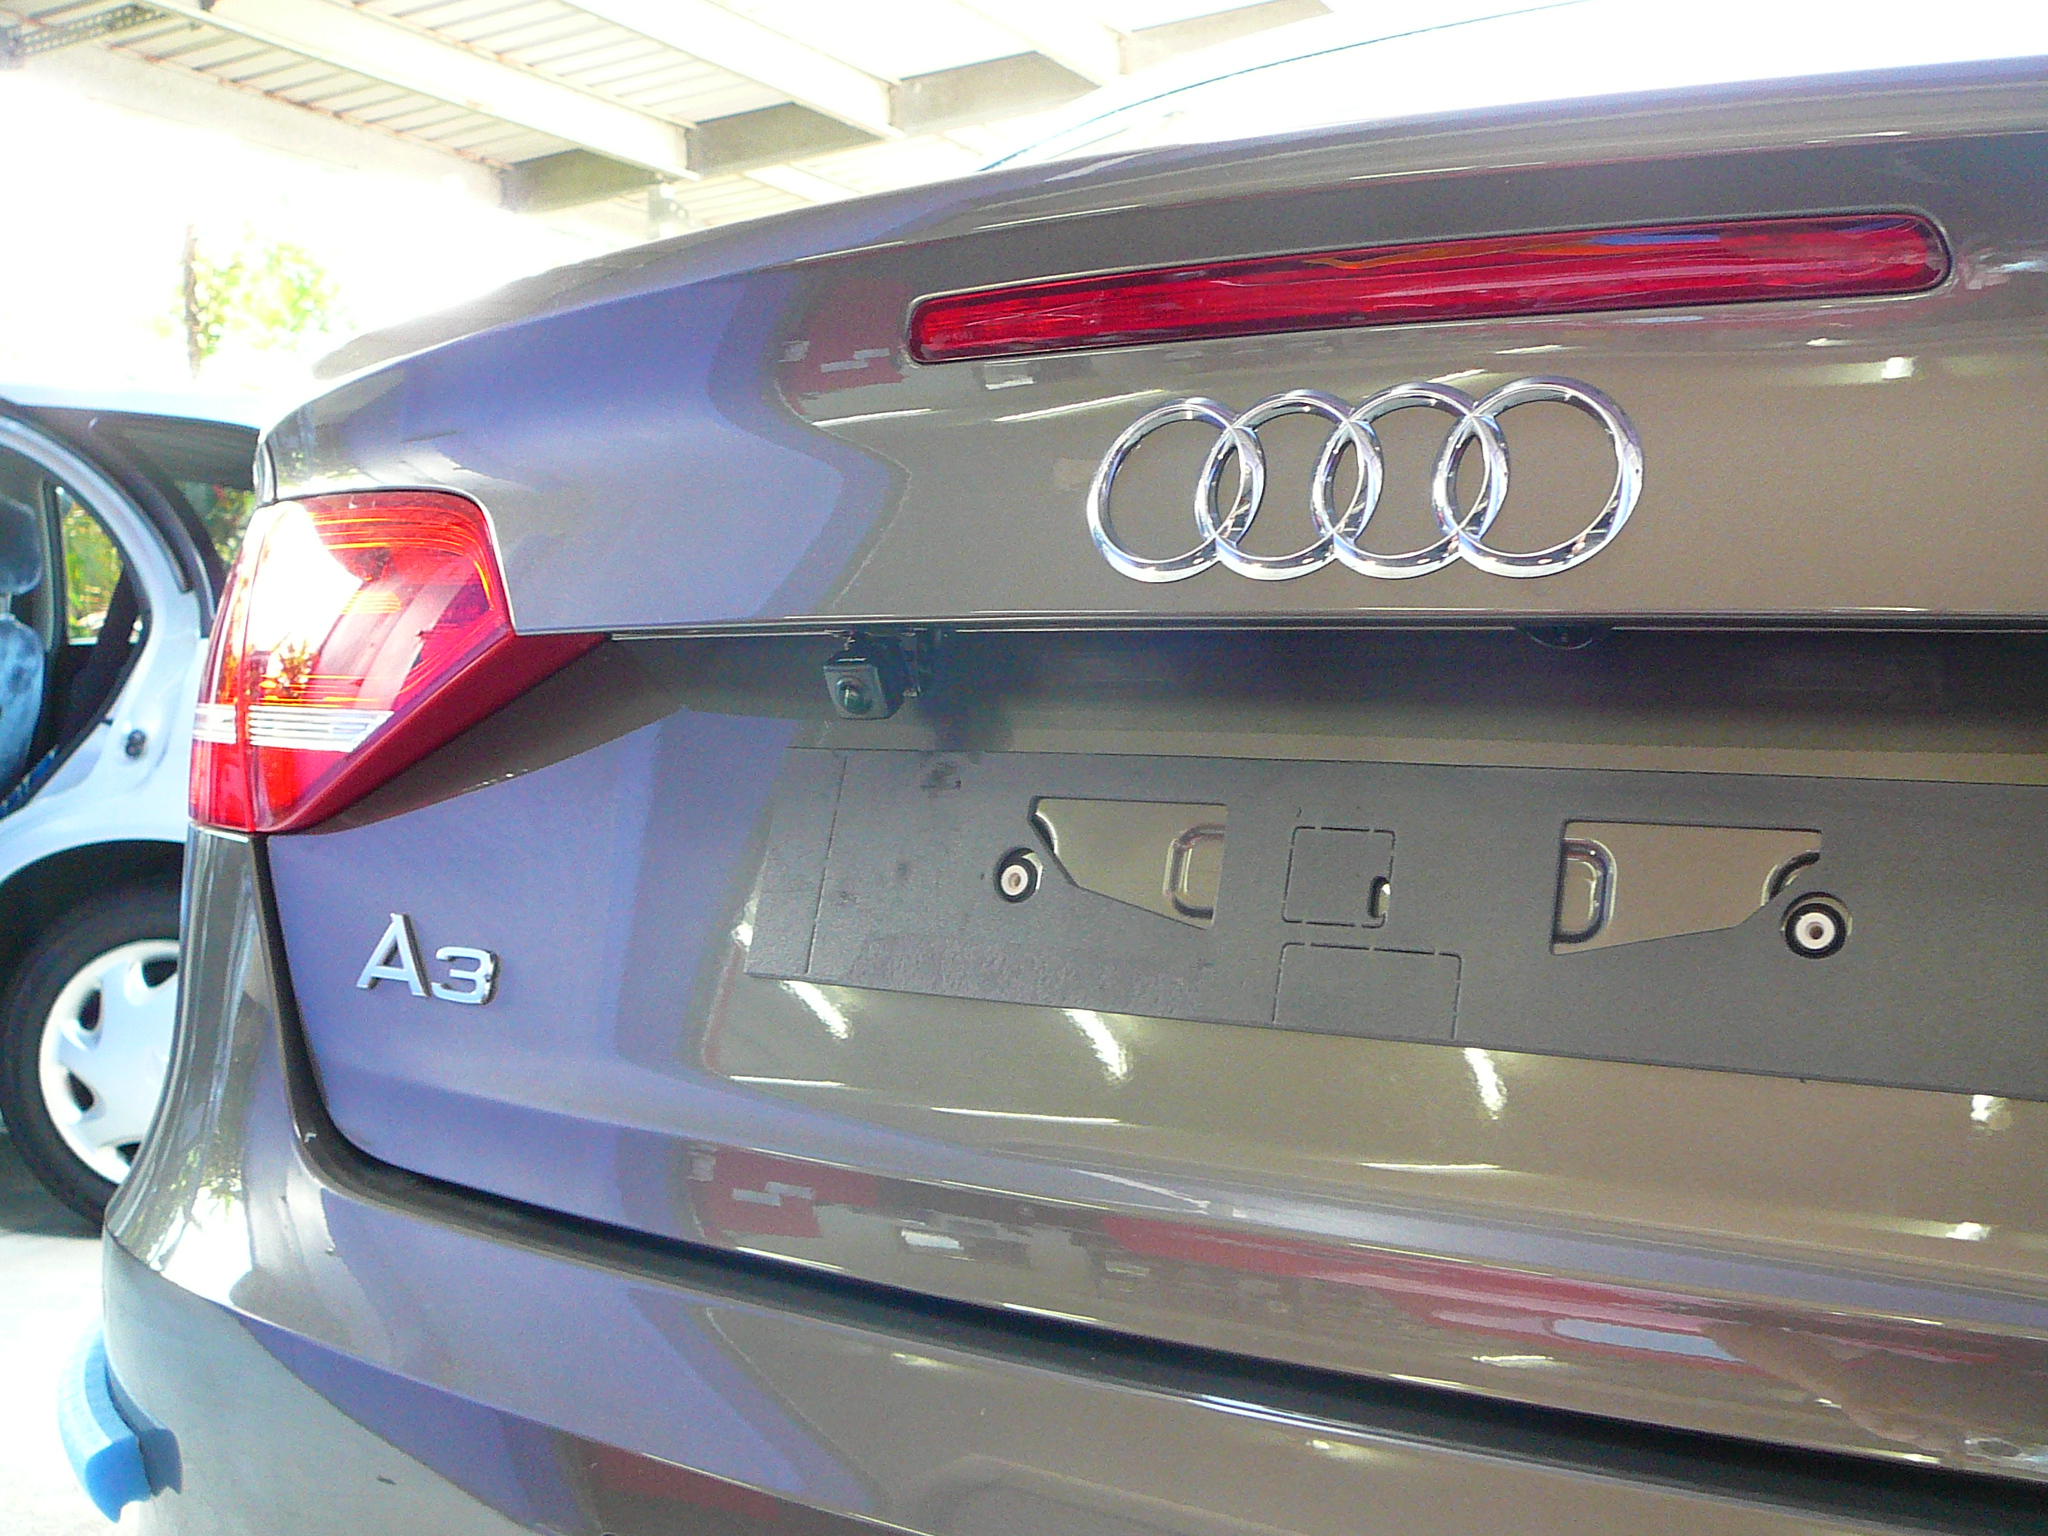 Audi A3 2011, Alpine touch screen & Reverse Camera